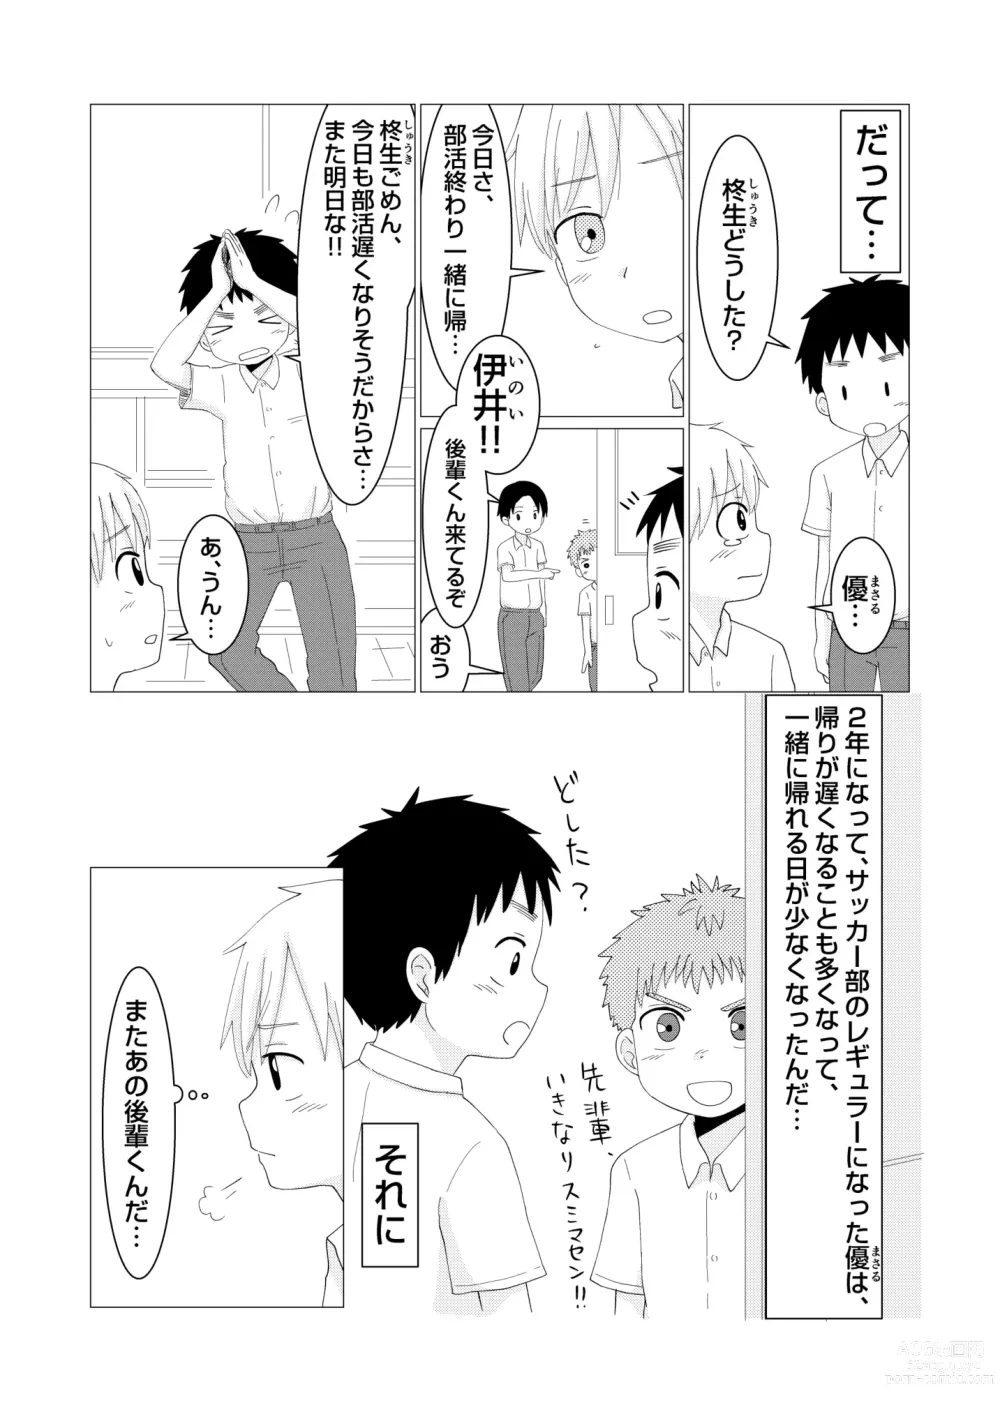 Page 4 of doujinshi Dear My Hero Episode 2